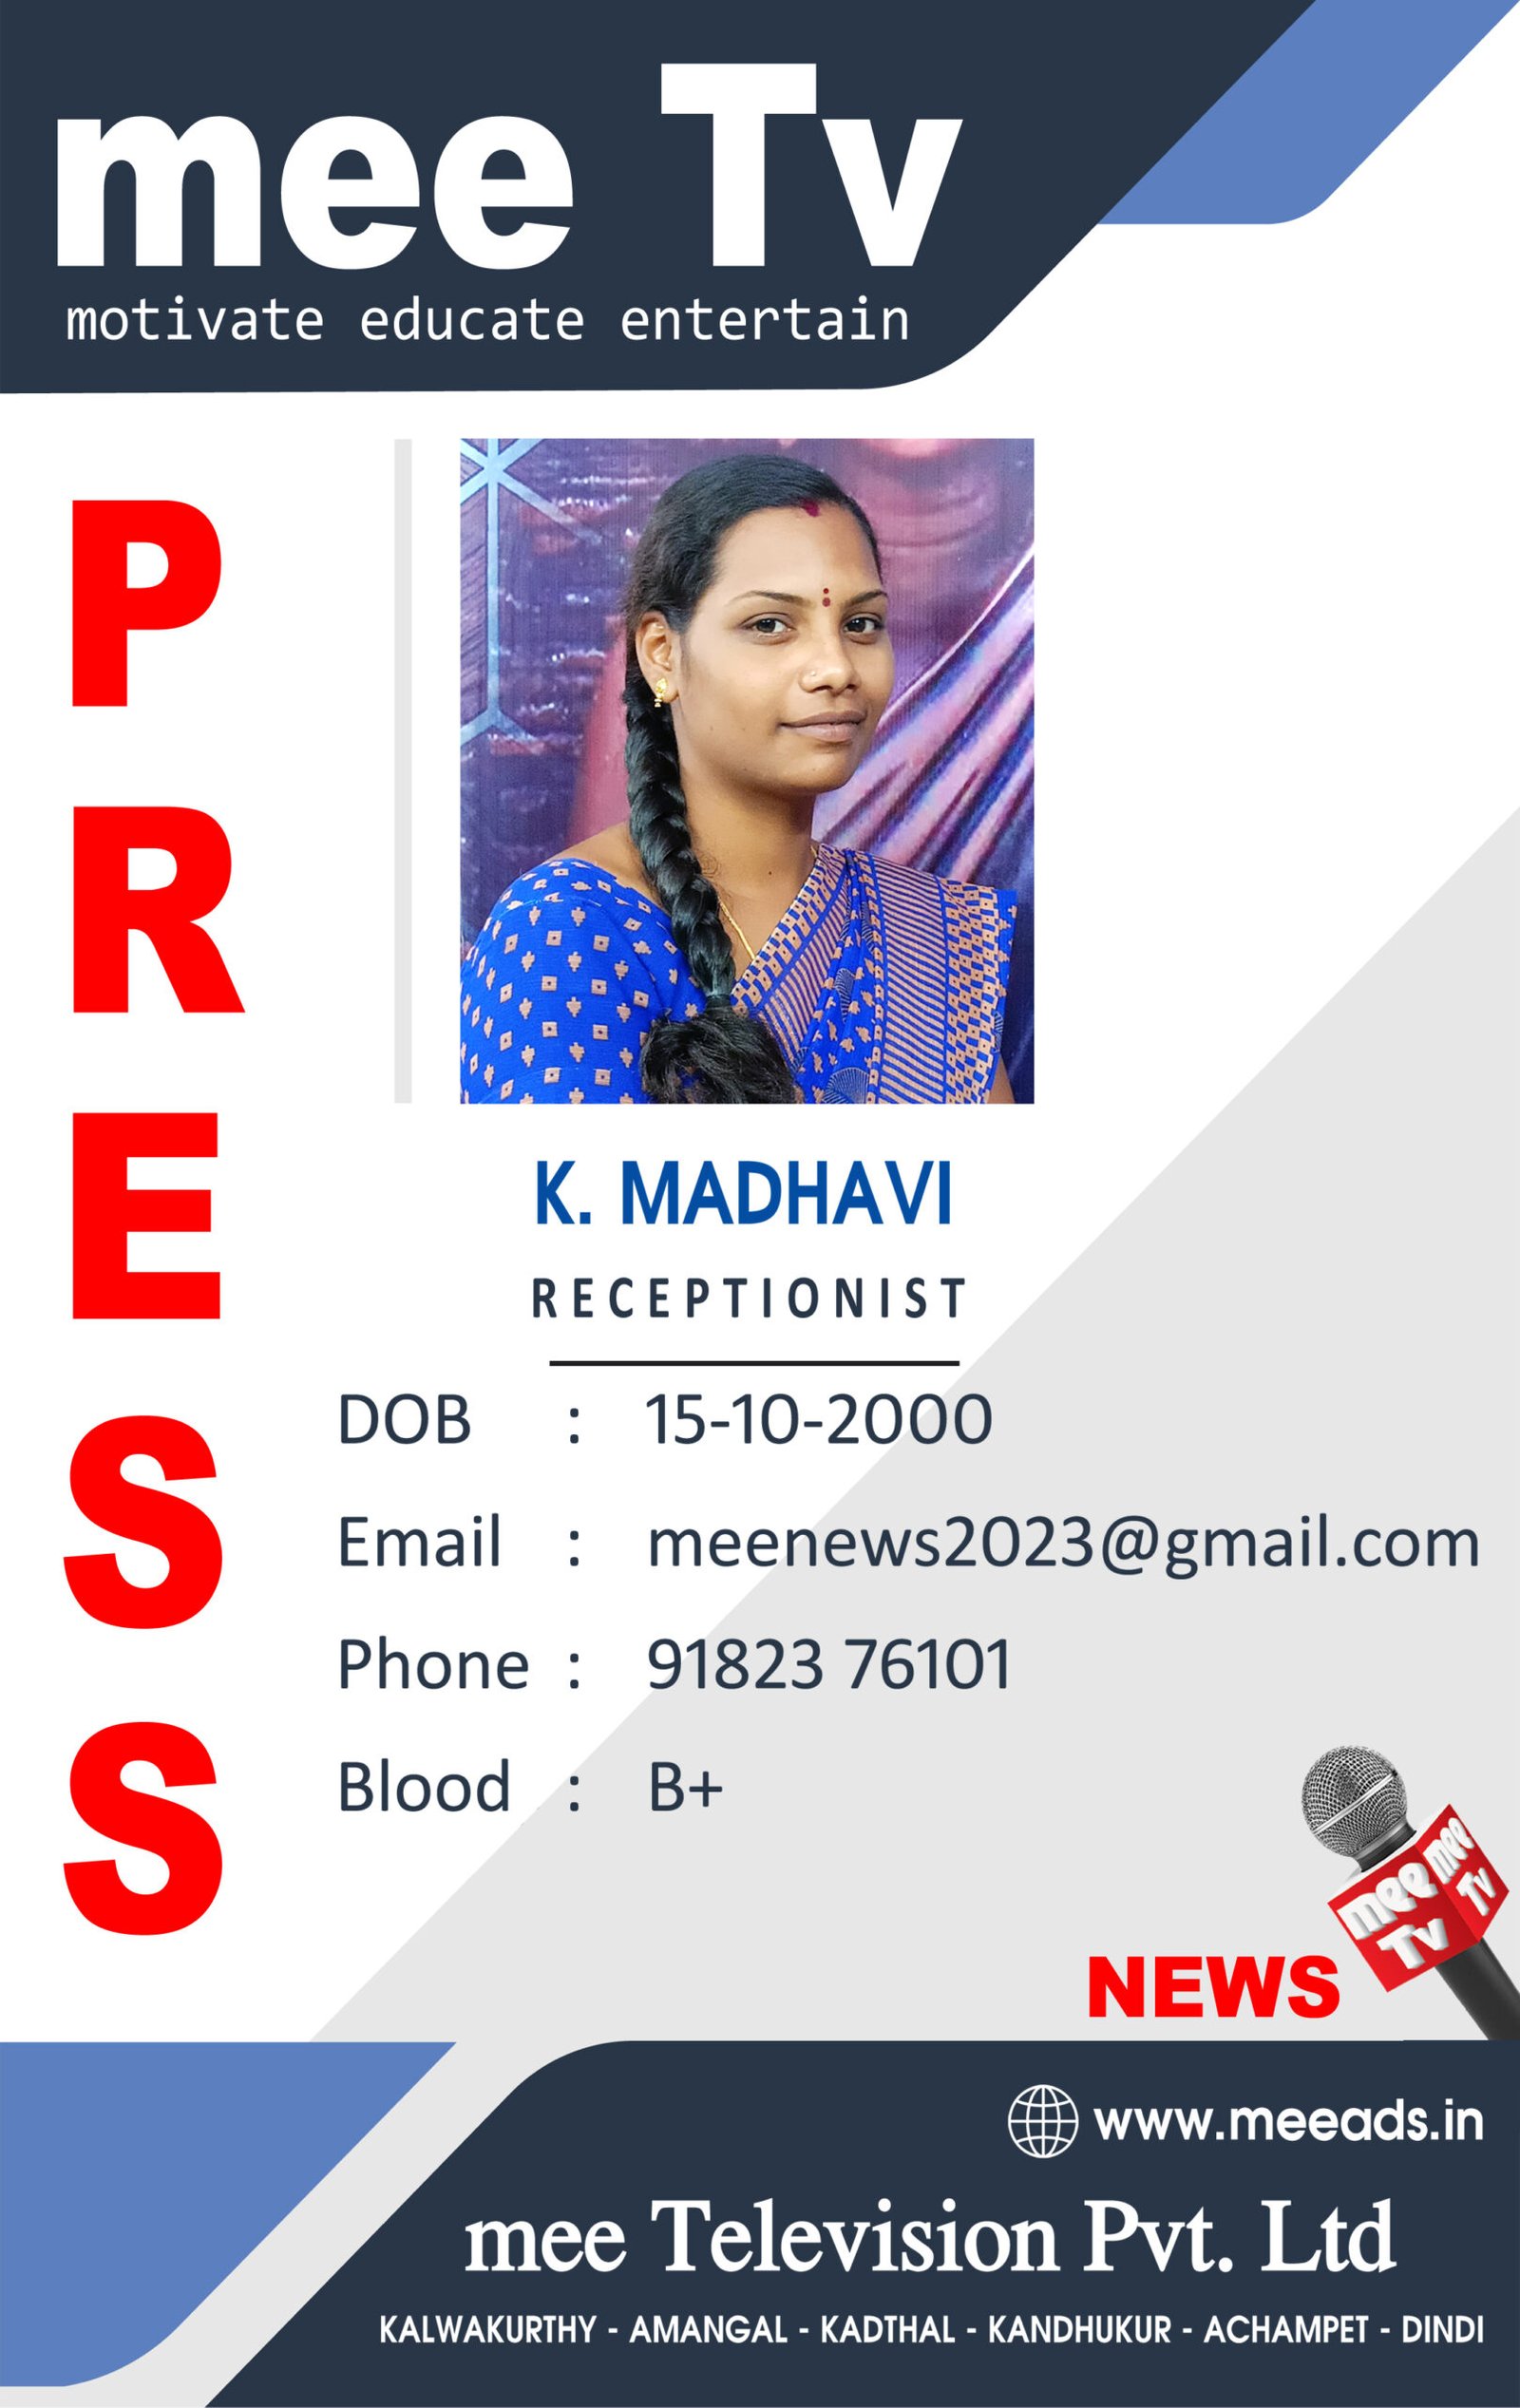 K Madhavi